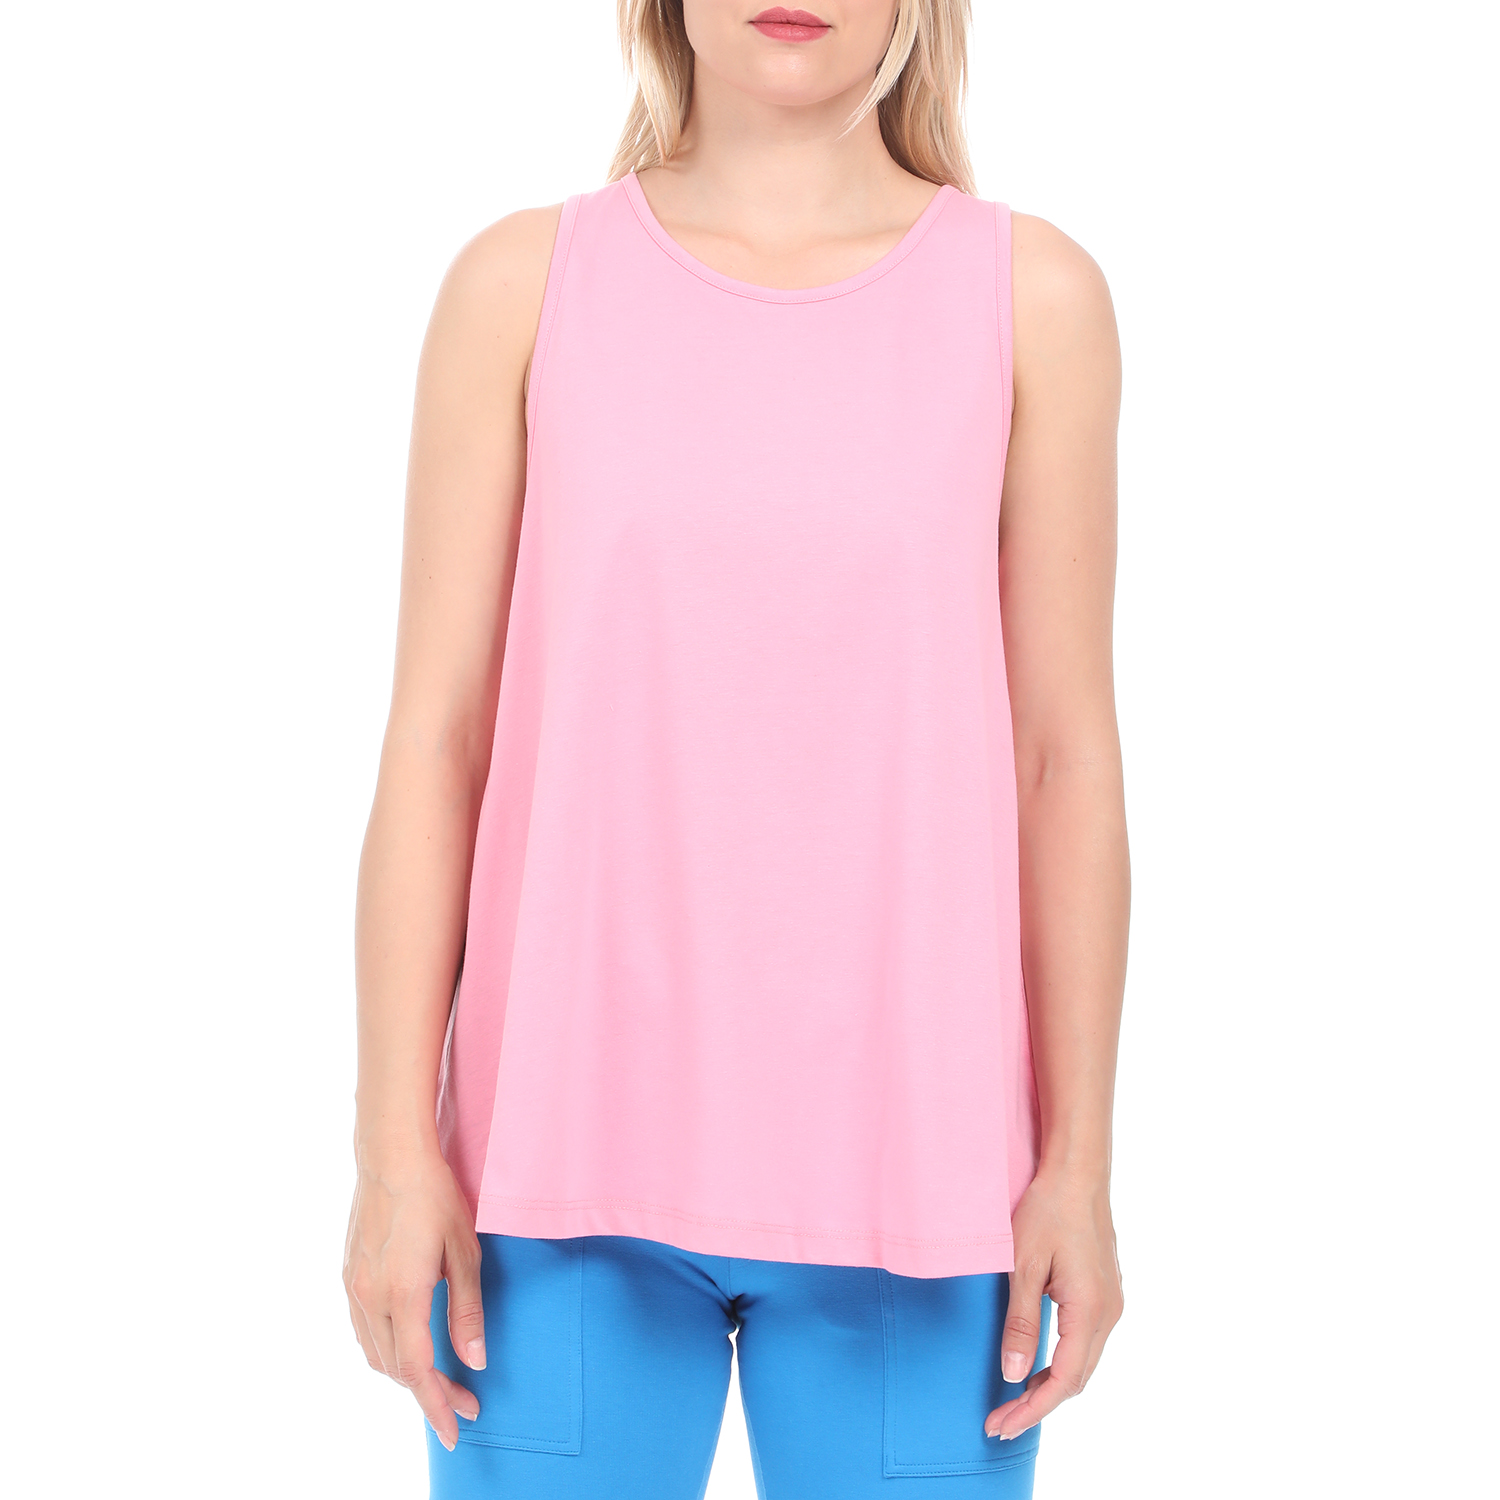 Γυναικεία/Ρούχα/Αθλητικά/T-shirt-Τοπ BODYTALK - Γυναικεία αμάνικη μπλούζα BODYTALK ροζ